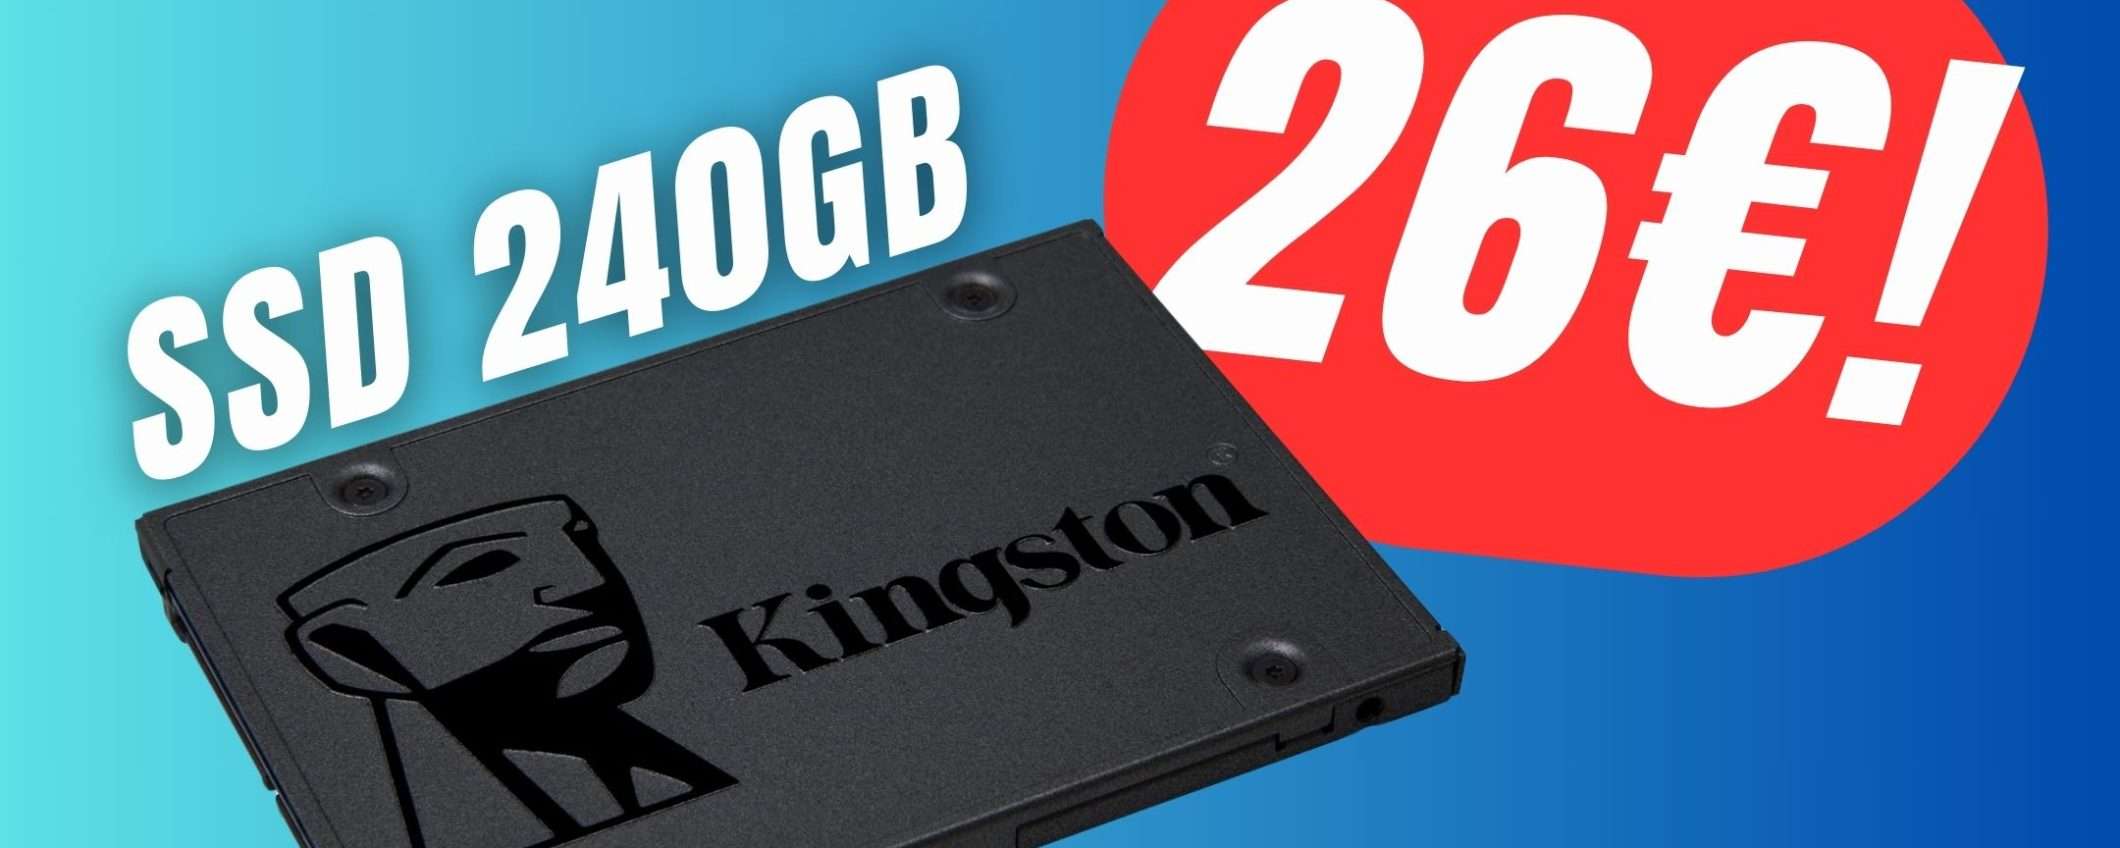 L'SSD Kingston da 240GB costa 26€ con lo SCONTO